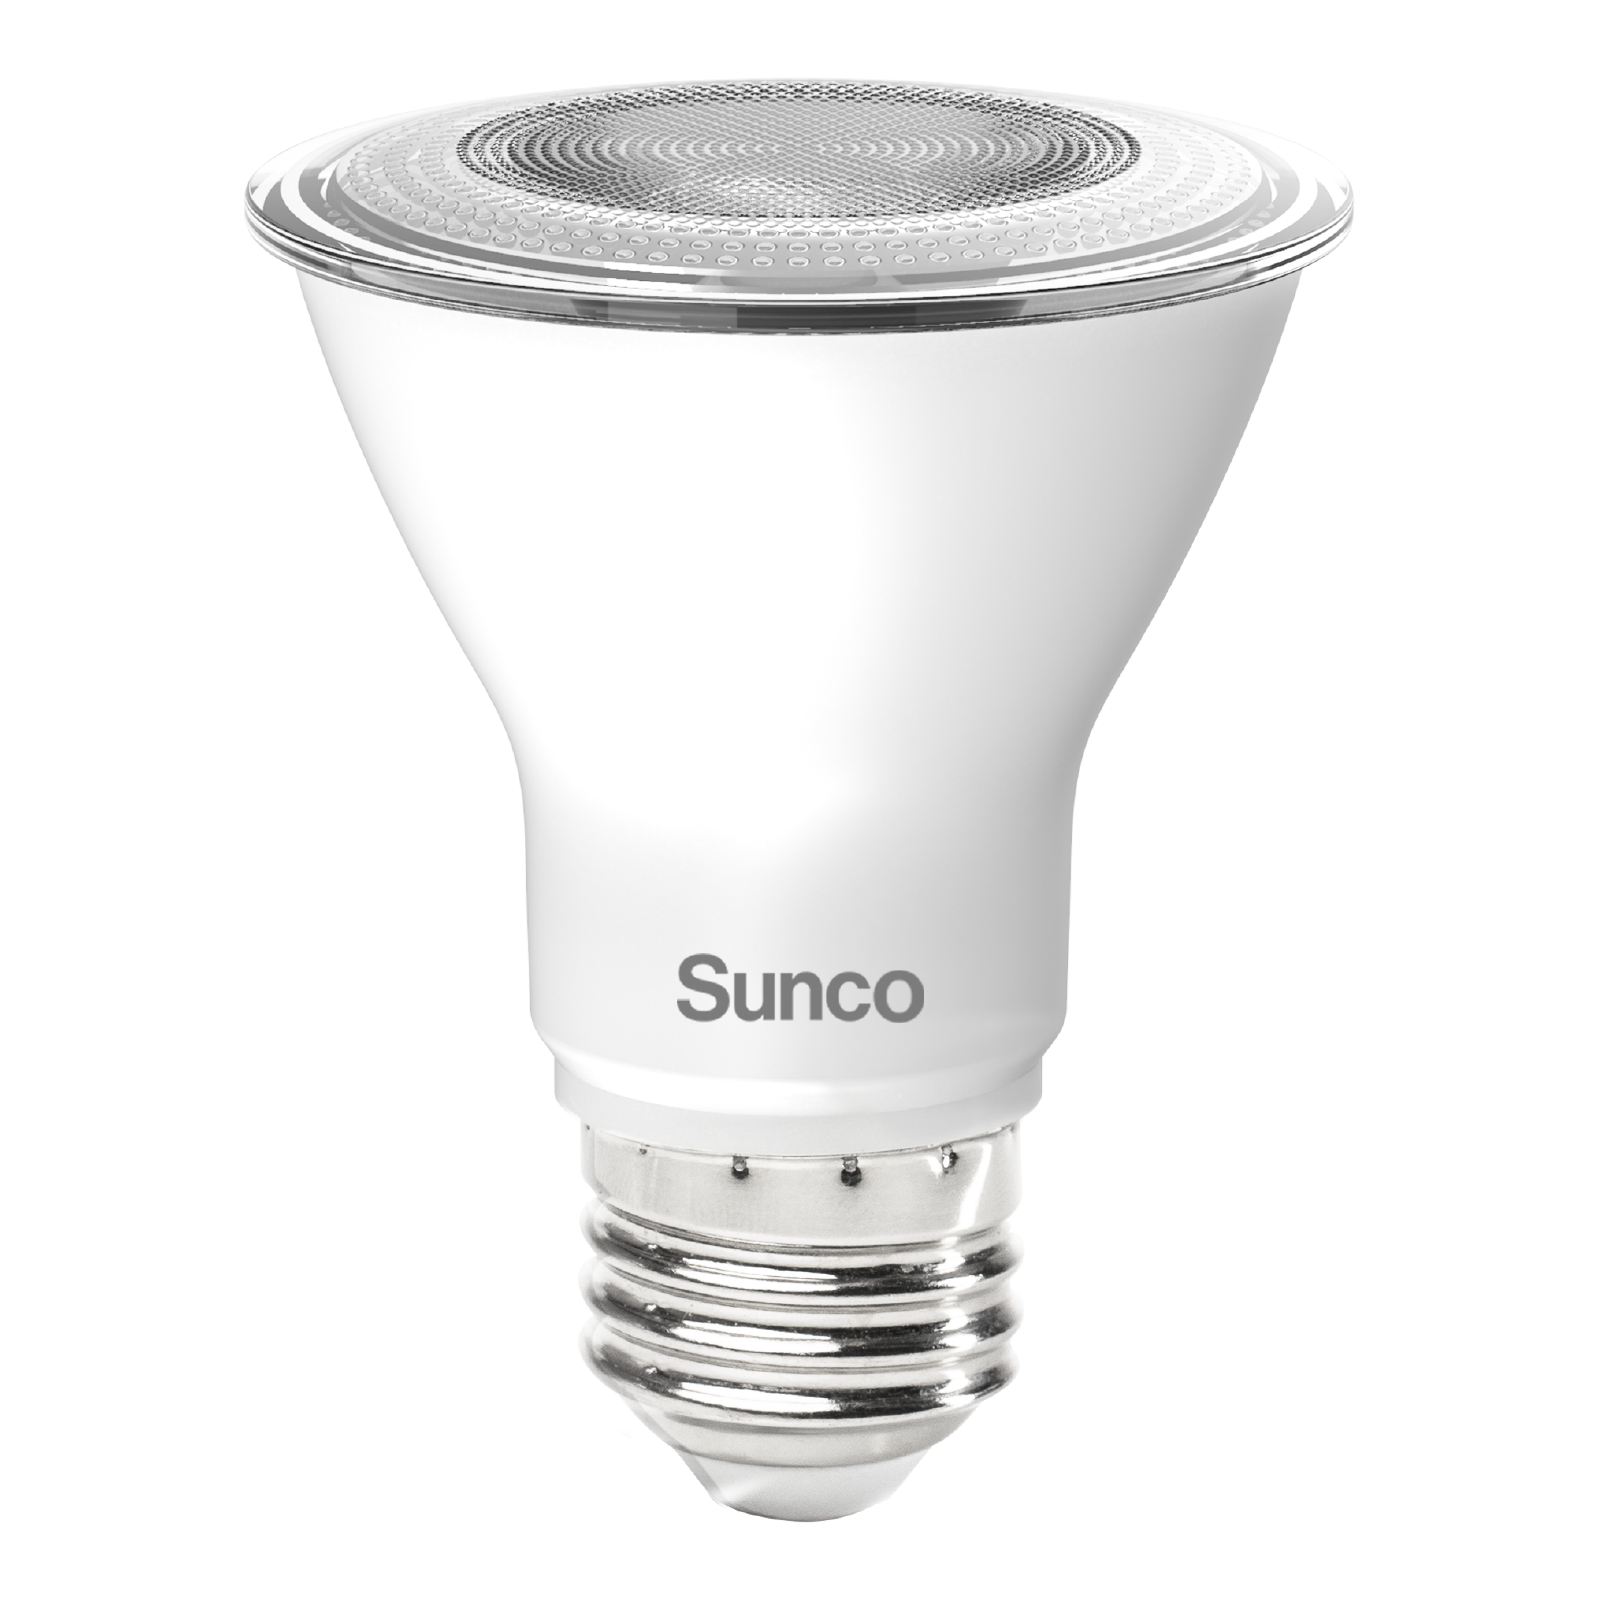 LED | LED LIGHTING SUNCO – Sunco